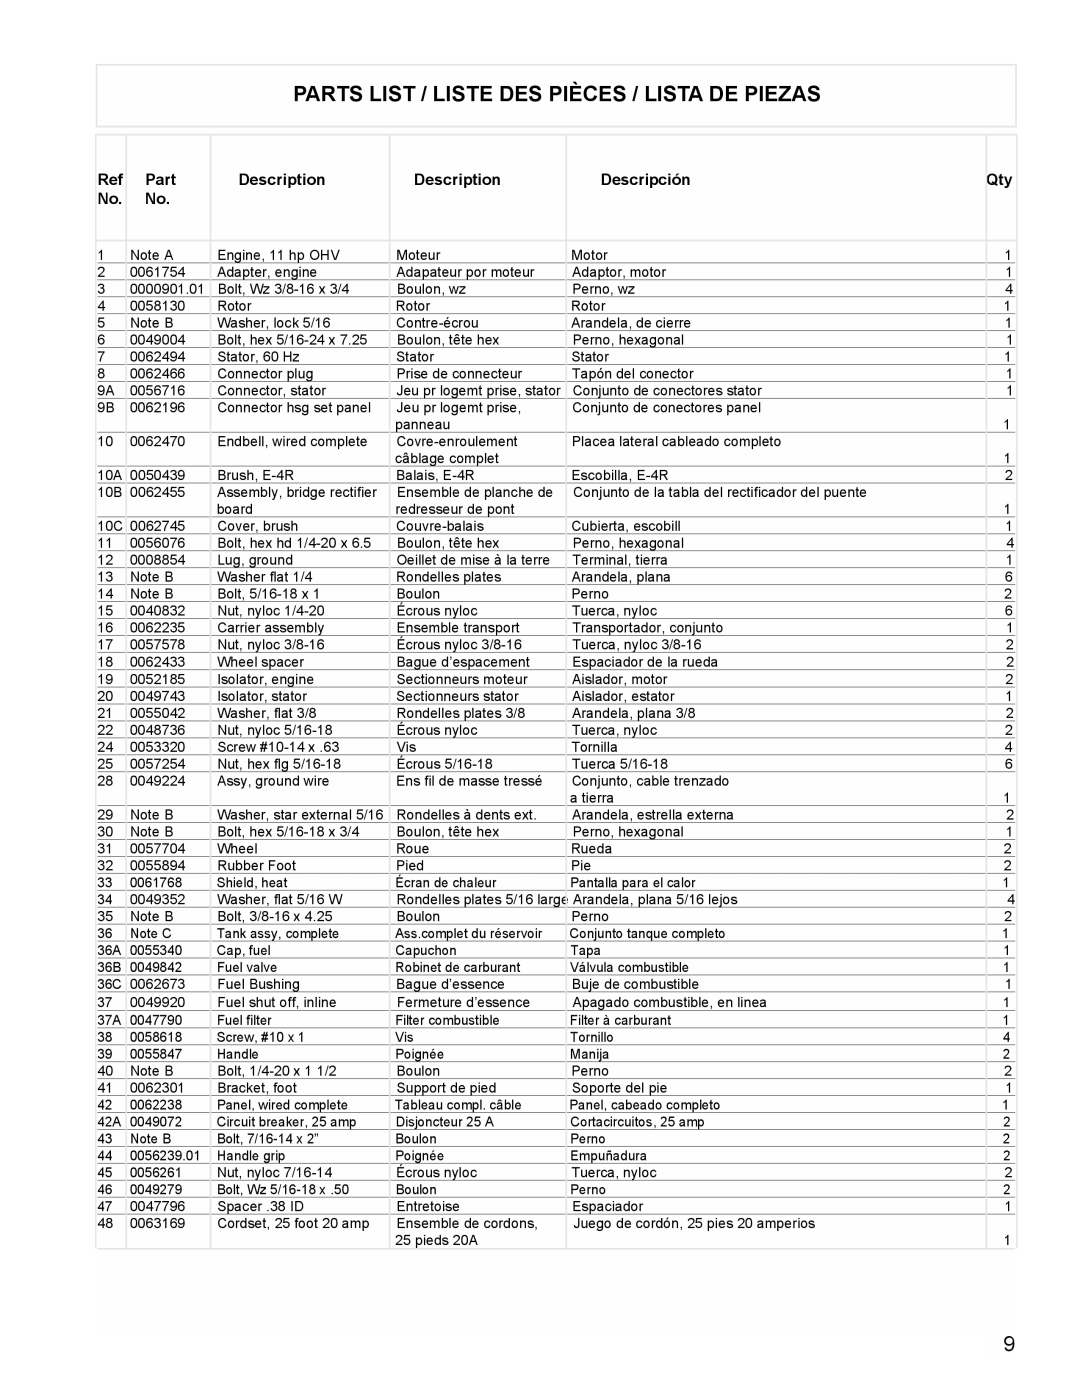 Powermate PL0525501 manual Parts List / Liste Des Pièces / Lista De Piezas, Description, Descripción 